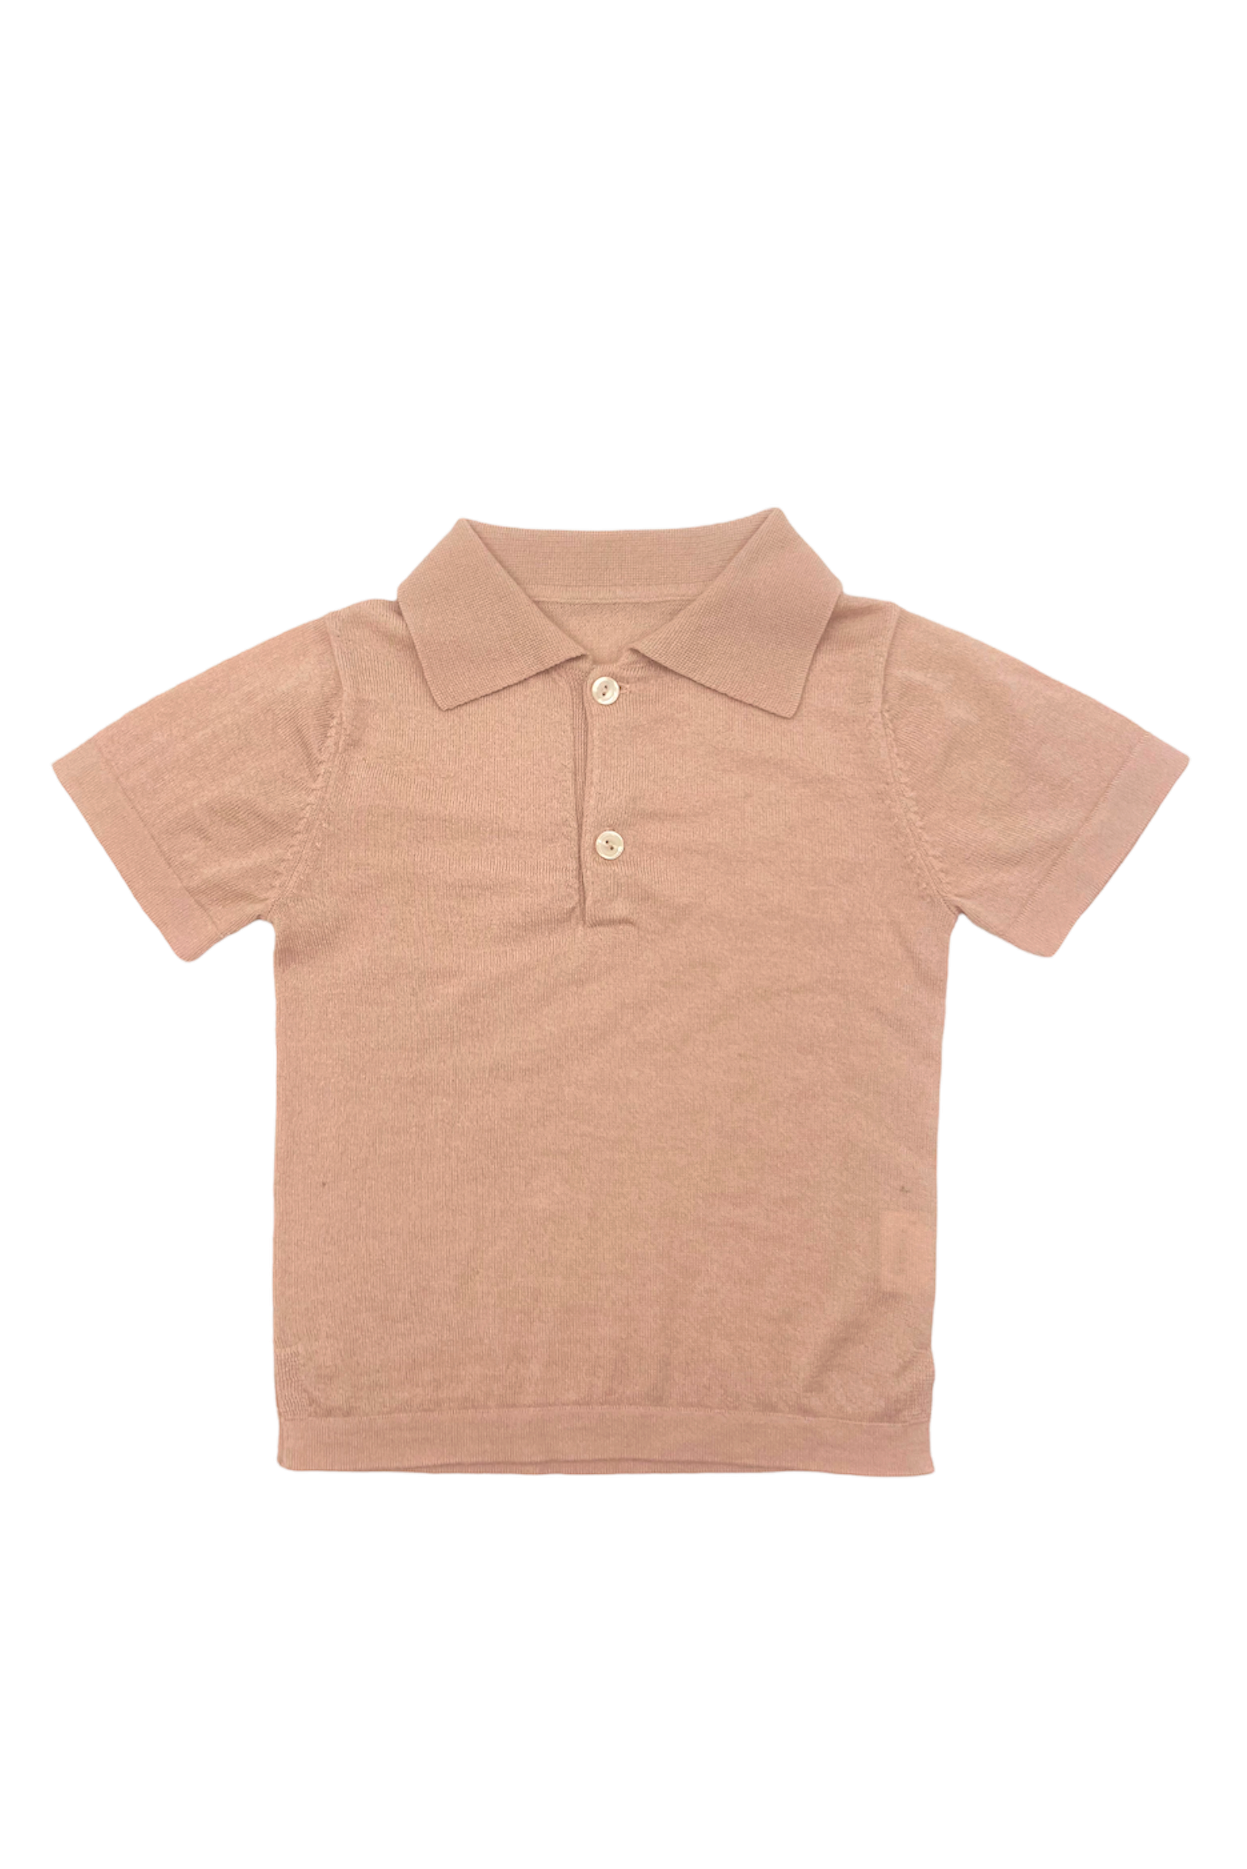 Tee-shirt col polo rose quartz